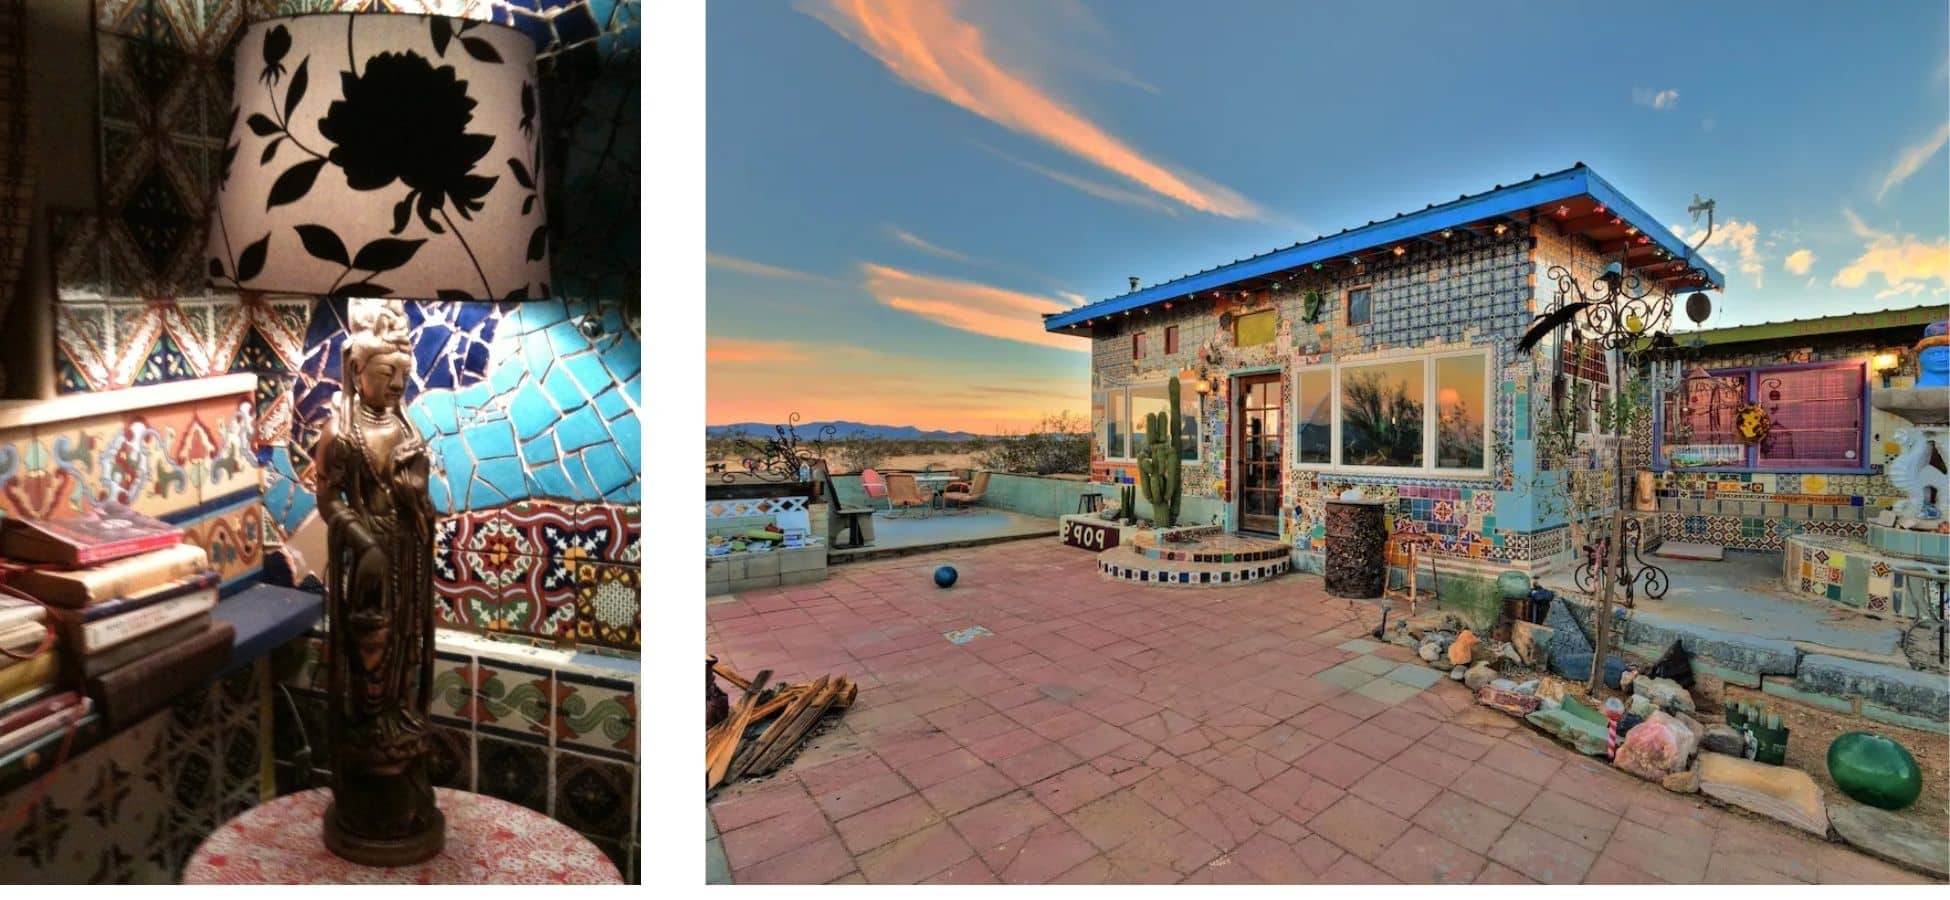 airbnb original: La casa de los azulejos